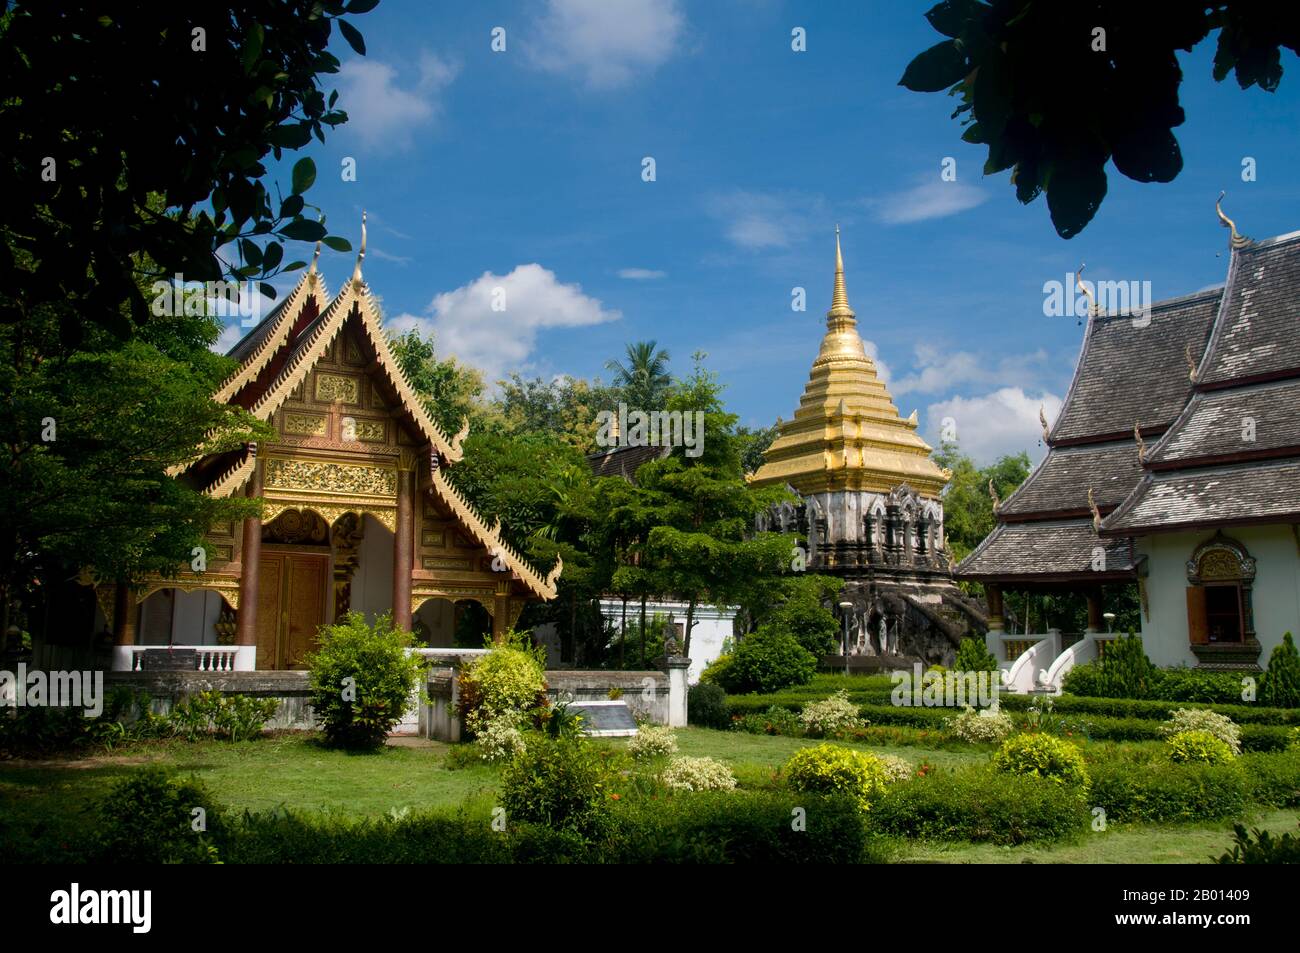 Thaïlande: Ubosot (salle d'ordination), ho trai (bibliothèque), chedi et viharn, Wat Chiang Man, Chiang Mai. Wat Chiang Man (Chiang Mun) a été construit en 1297 EC et est considéré comme le plus ancien temple de Chiang Mai. Il a été construit sur l'endroit qui avait été utilisé par le roi Mangrai comme camp pendant la construction de sa nouvelle capitale Chiang Mai. Chiang Mai (signifiant « nouvelle ville »), parfois écrit comme « Chiengmai » ou « Chiangmai », est la ville la plus importante et la plus importante sur le plan culturel du nord de la Thaïlande. Le roi Mengrai fonda la ville de Chiang Mai en 1296, et il succéda à Chiang Rai comme capitale du royaume de Lanna. Banque D'Images